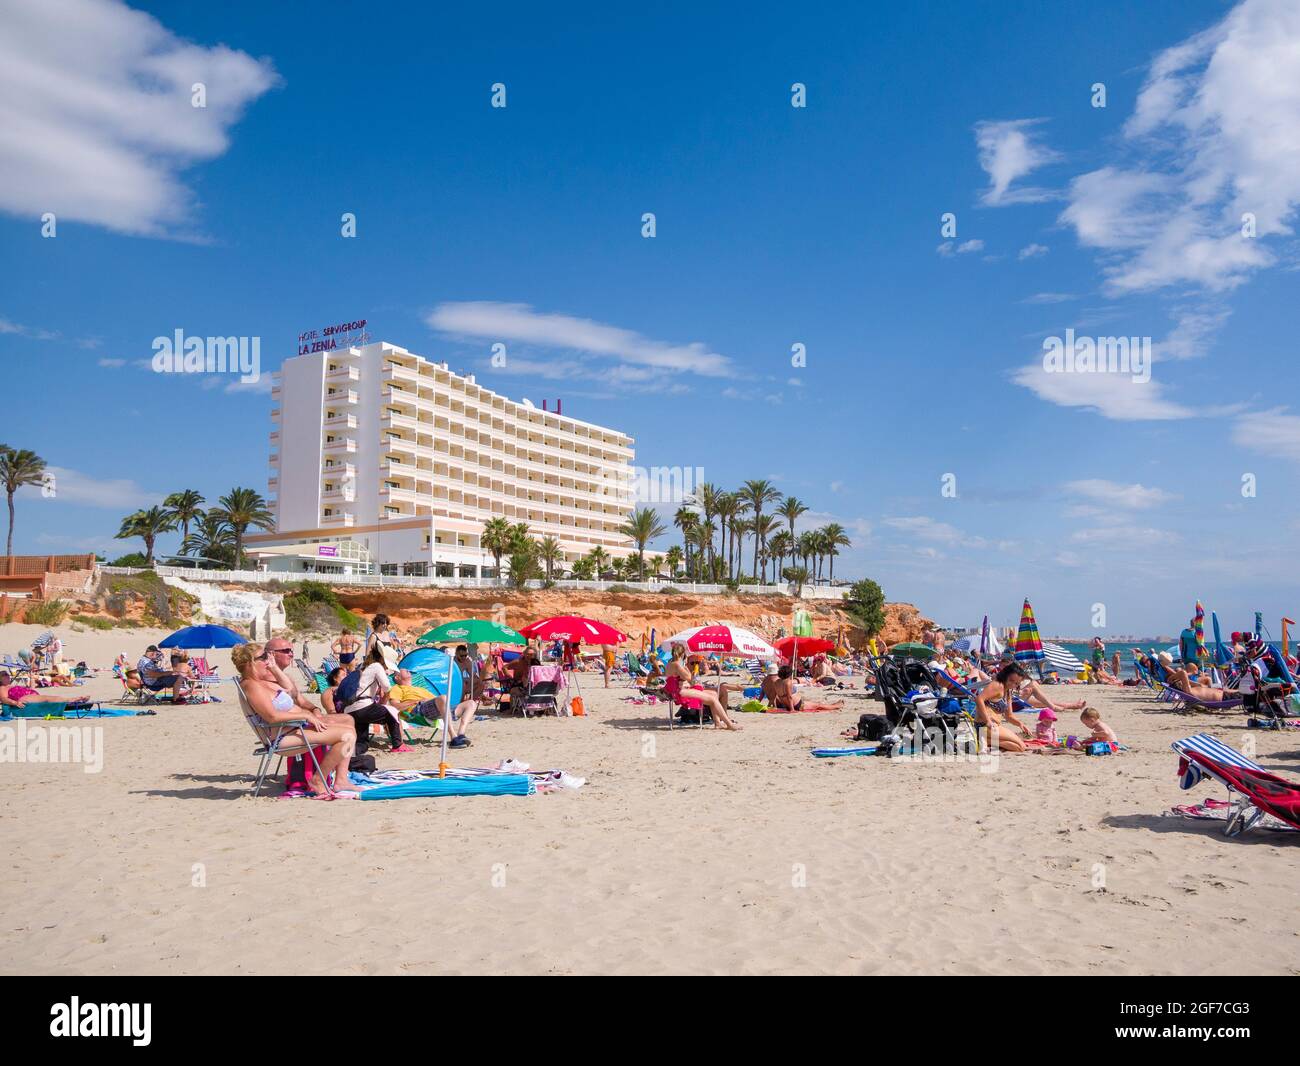 Vacanciers sur la plage de la Zenia sur la côte espagnole de la Costa Blanca, sur la Méditerranée près de Torrevieja. Banque D'Images